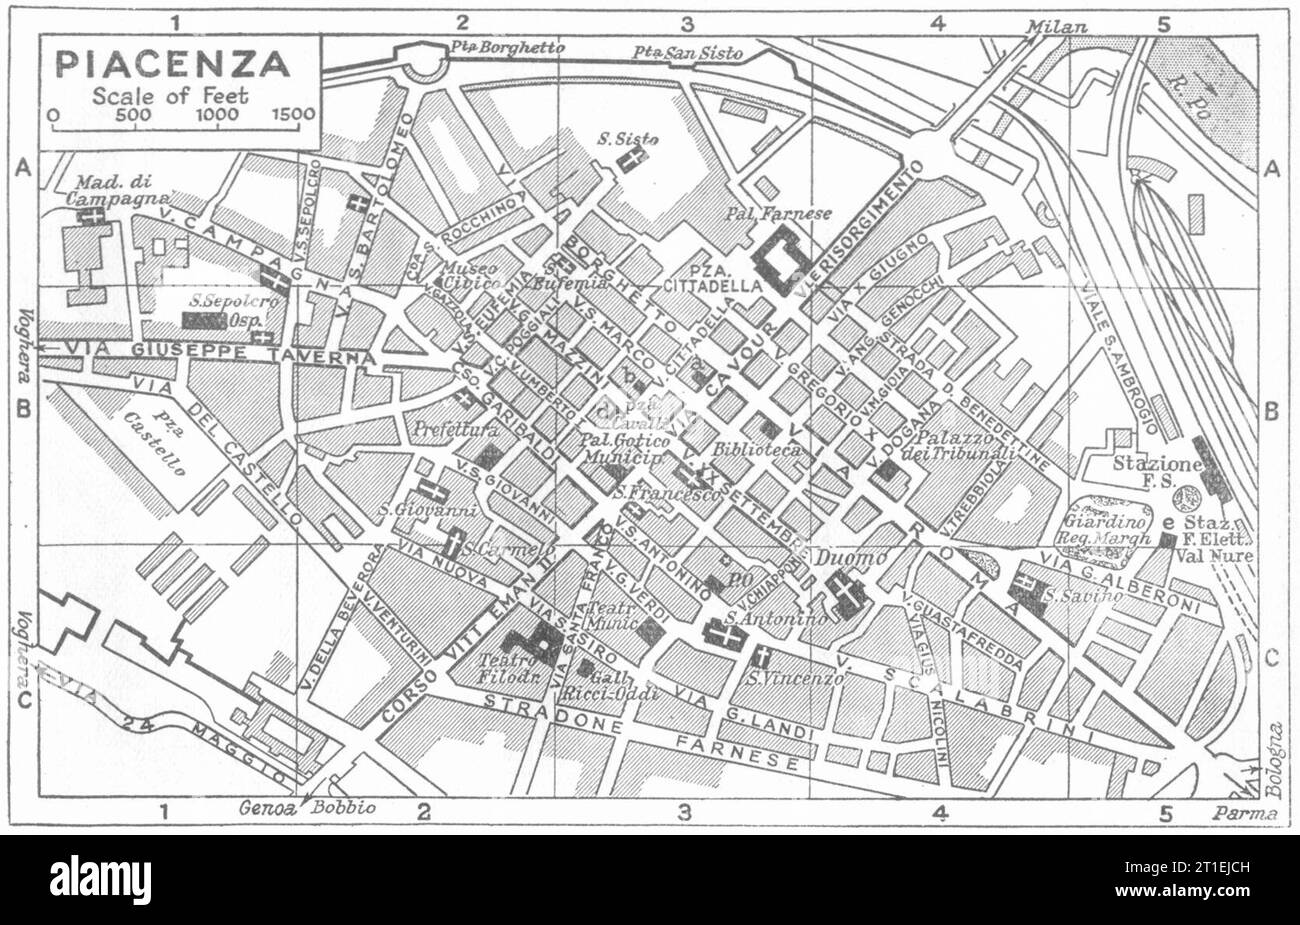 Piano città DI PIACENZA. Italia 1953 vecchia mappa d'epoca Foto Stock